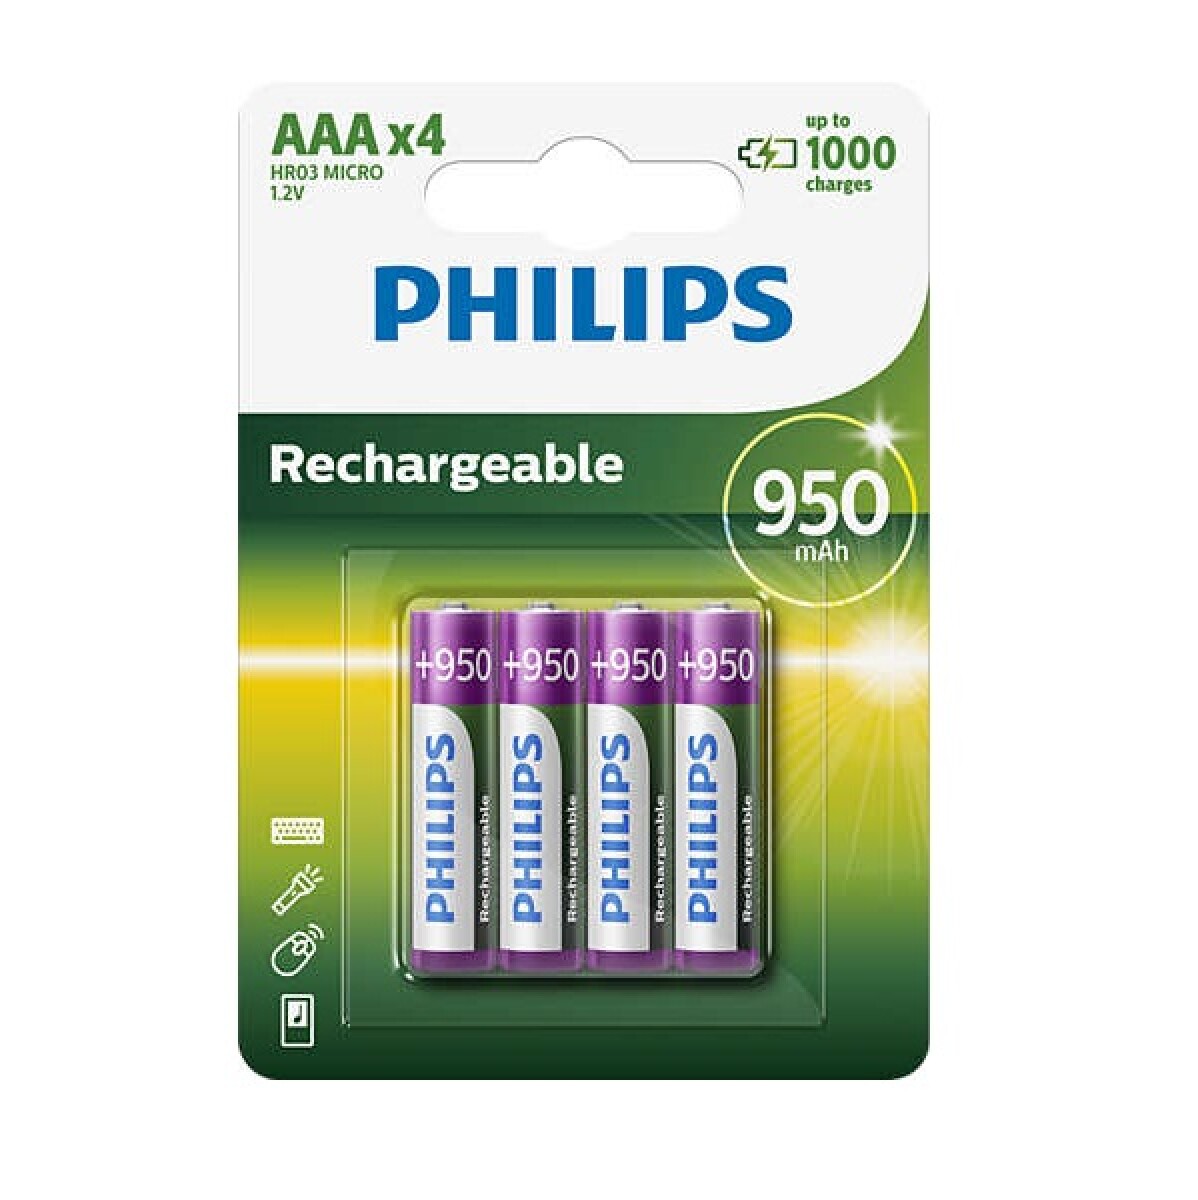 Pilas Recargables Philips Aaa 950MAH X4 - 001 